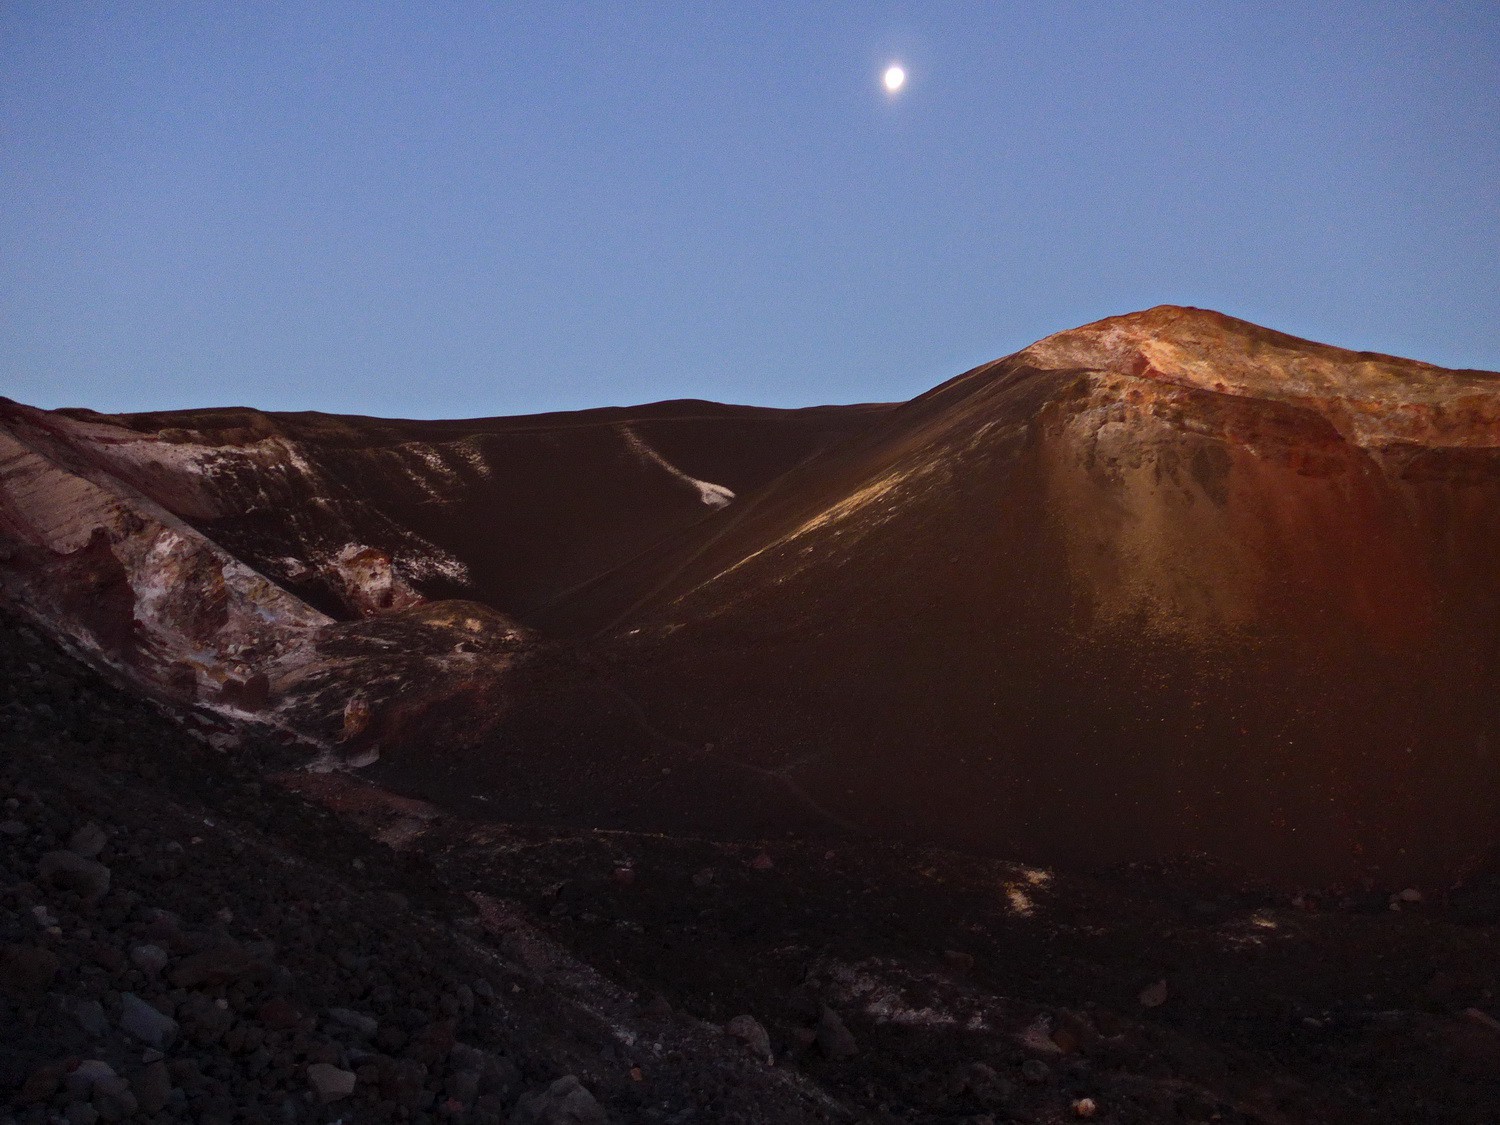 Cerro Negro at sunrise